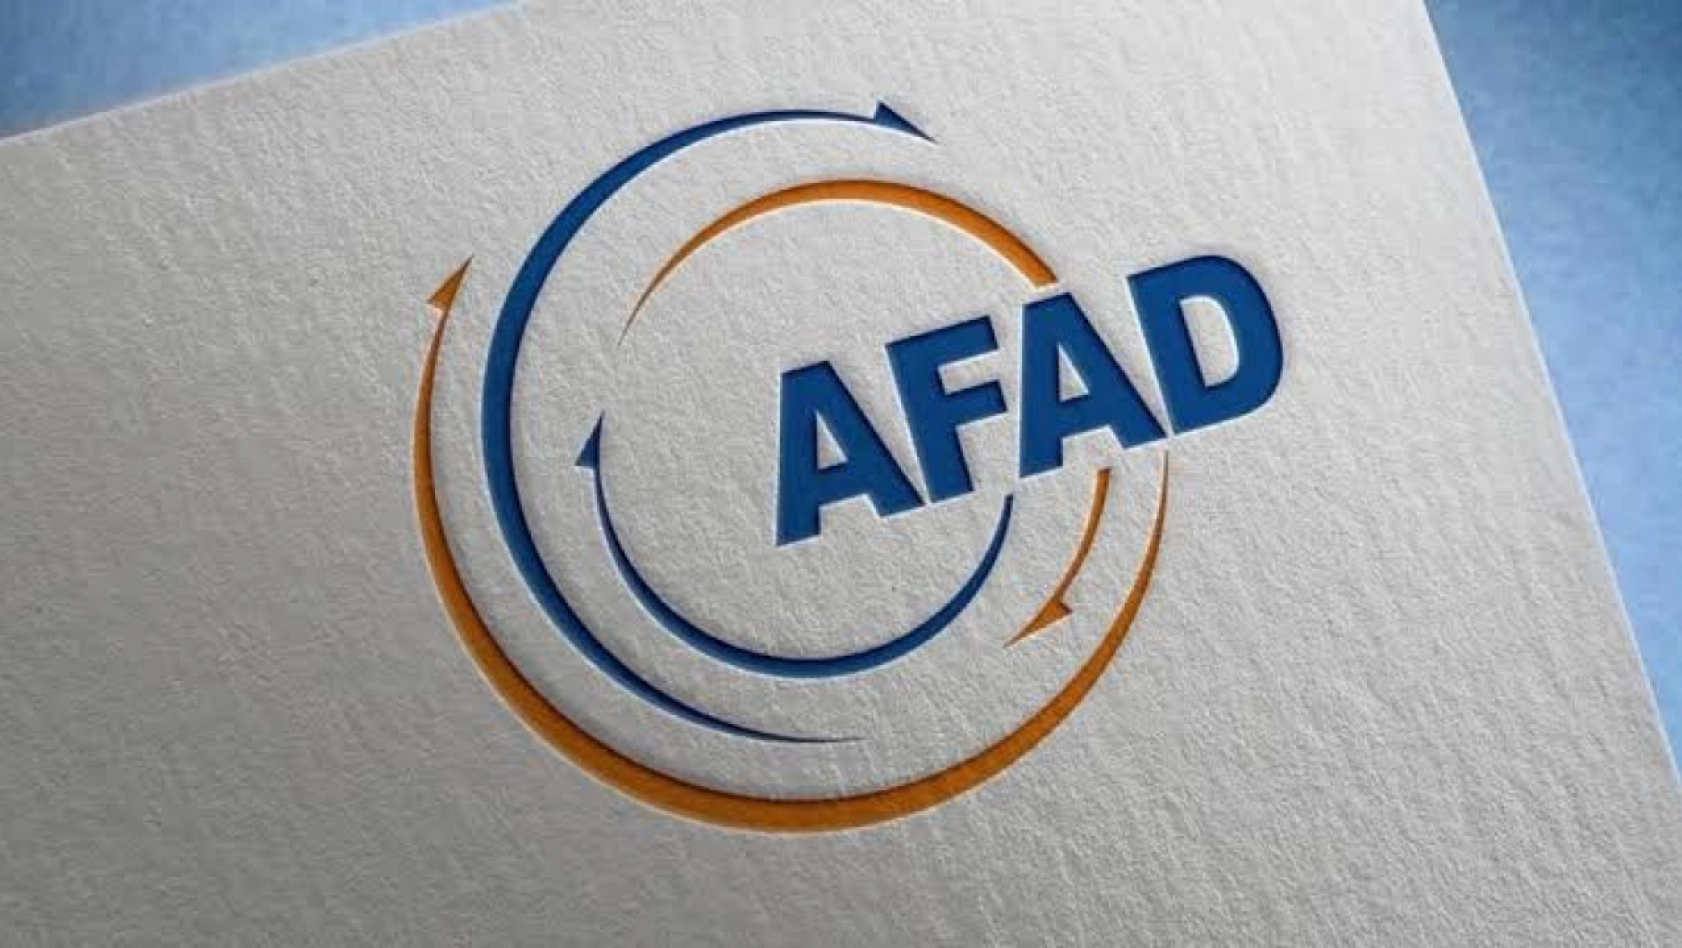 AFAD: 'Malatya'daki 4.7 büyüklüğündeki artçı depremin ardından olumsuz durum bulunmamaktadır'